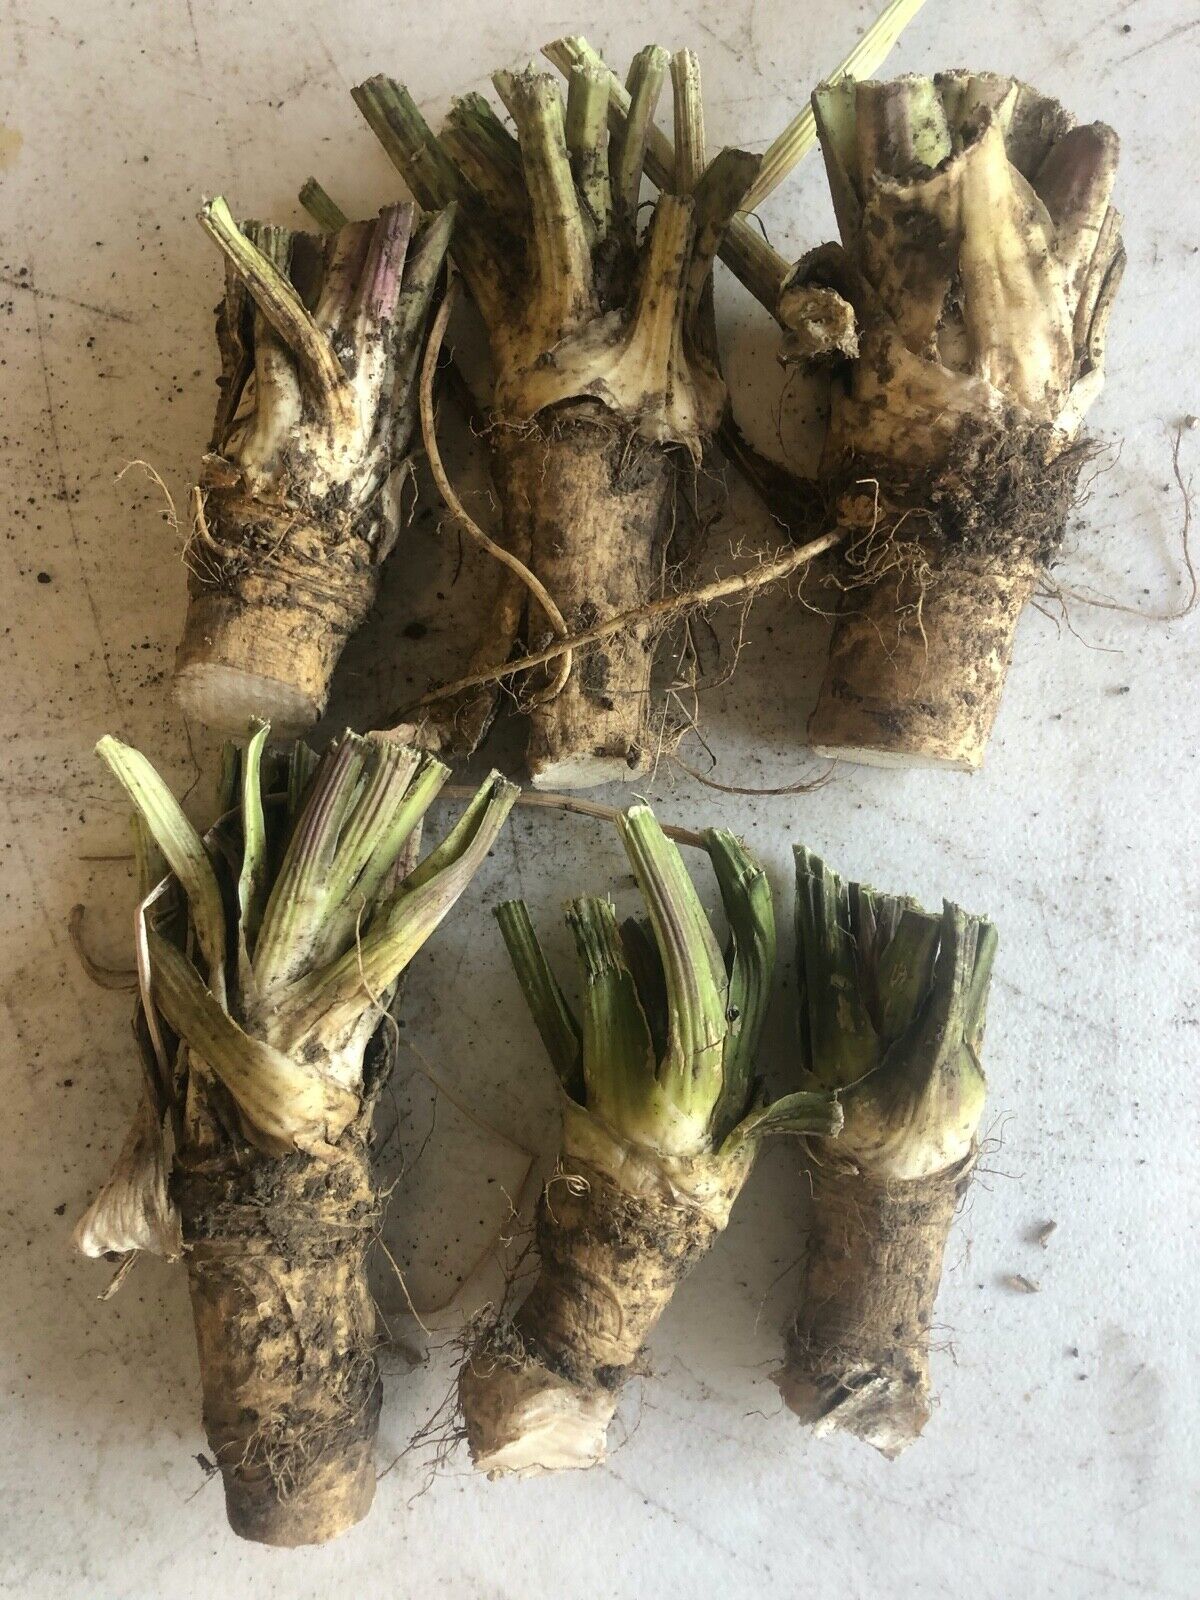 HORSERADISH, ORGANIC: 3 Crowns, 3 Root & fresh root to make Horseradish NOW!